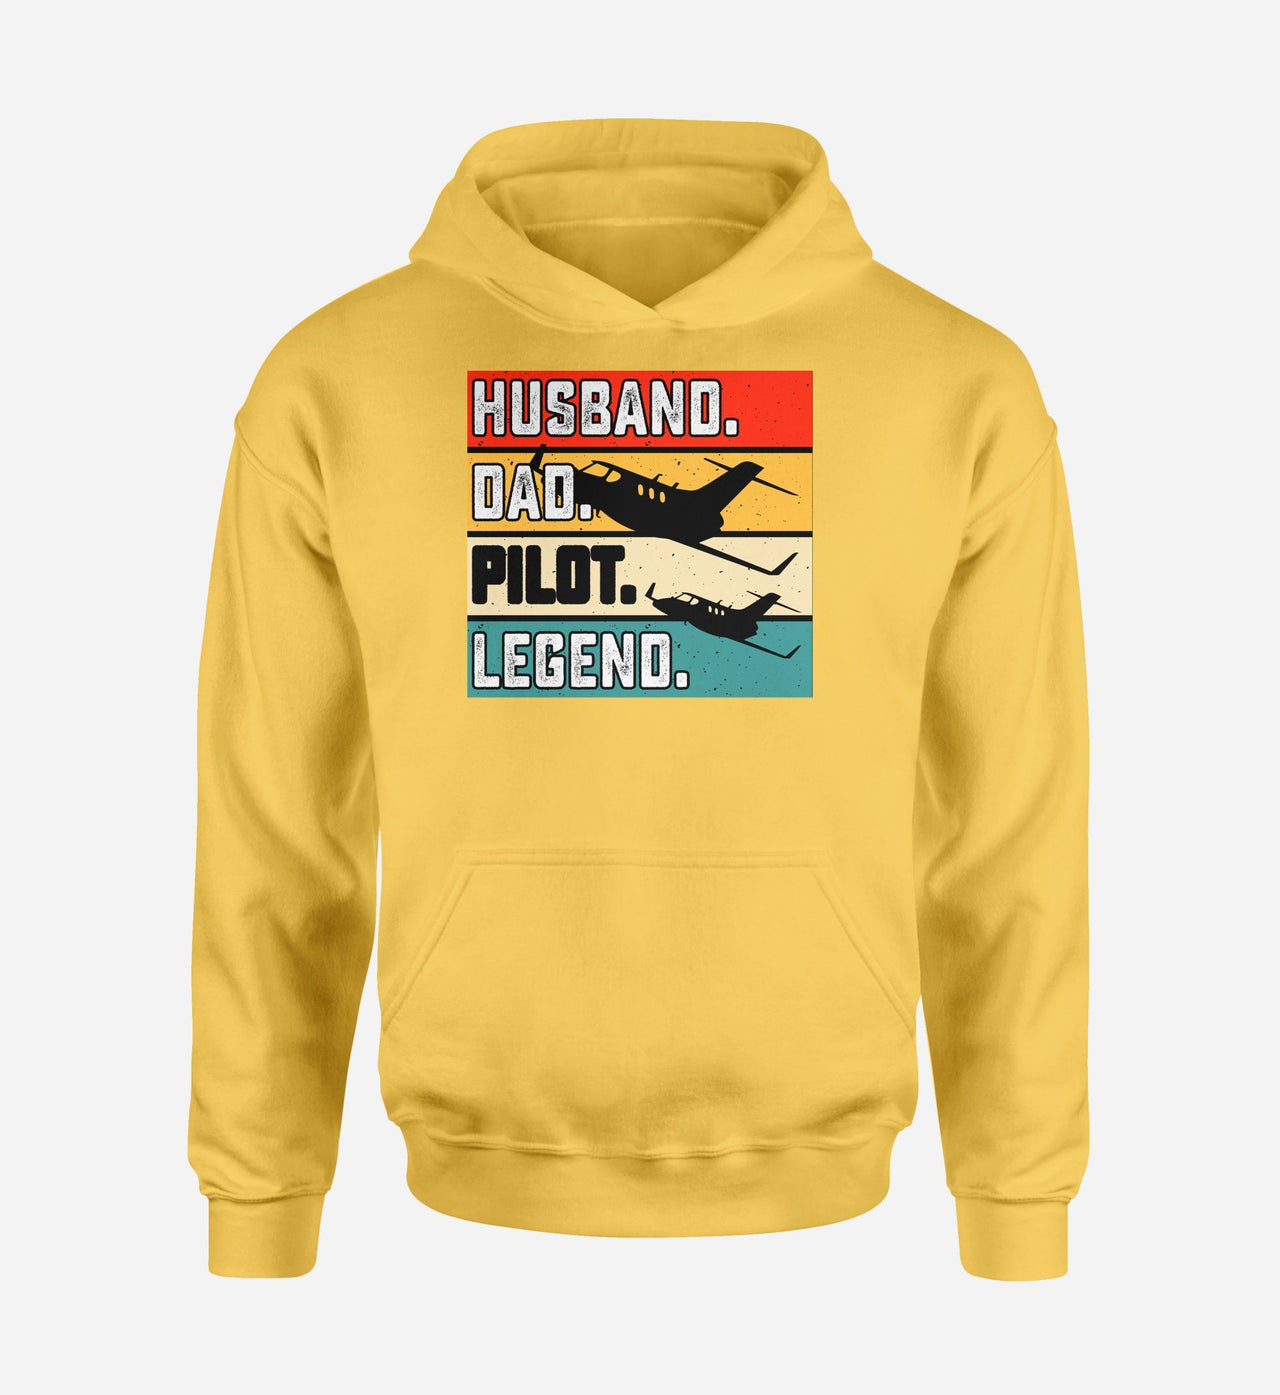 Husband & Dad & Pilot & Legend Designed Hoodies